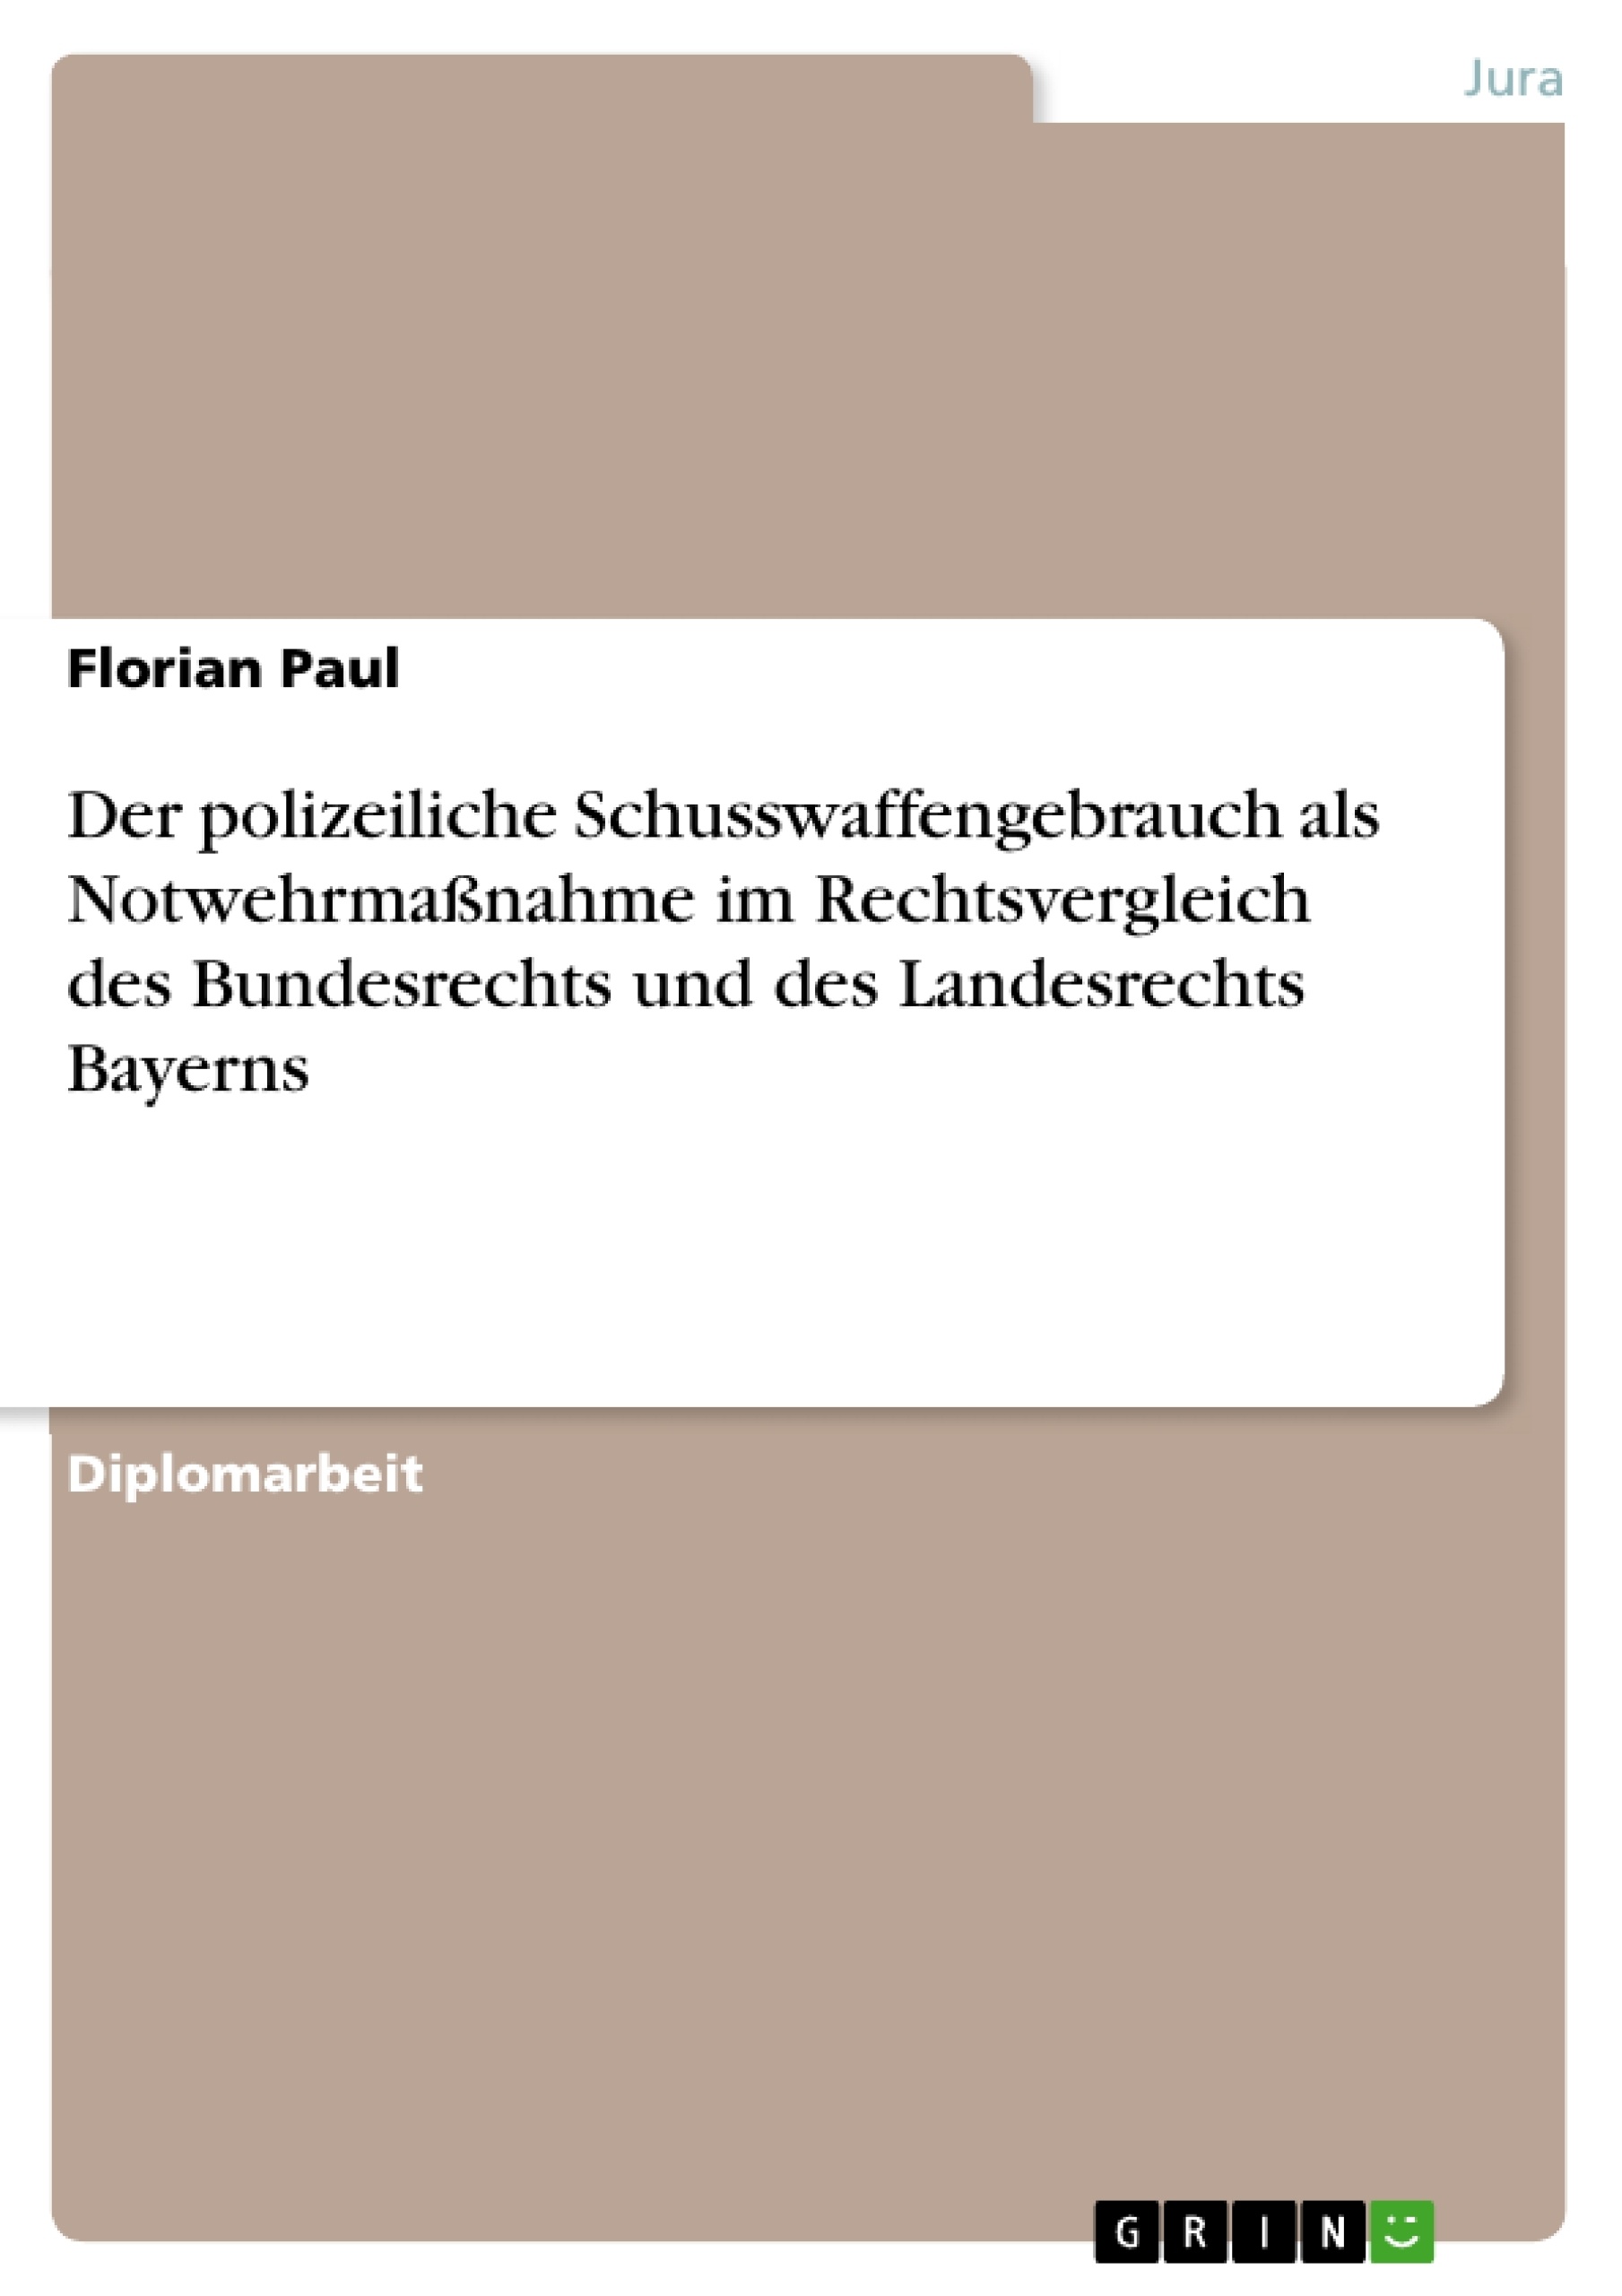 Title: Der polizeiliche Schusswaffengebrauch als Notwehrmaßnahme im Rechtsvergleich des Bundesrechts und des Landesrechts Bayerns